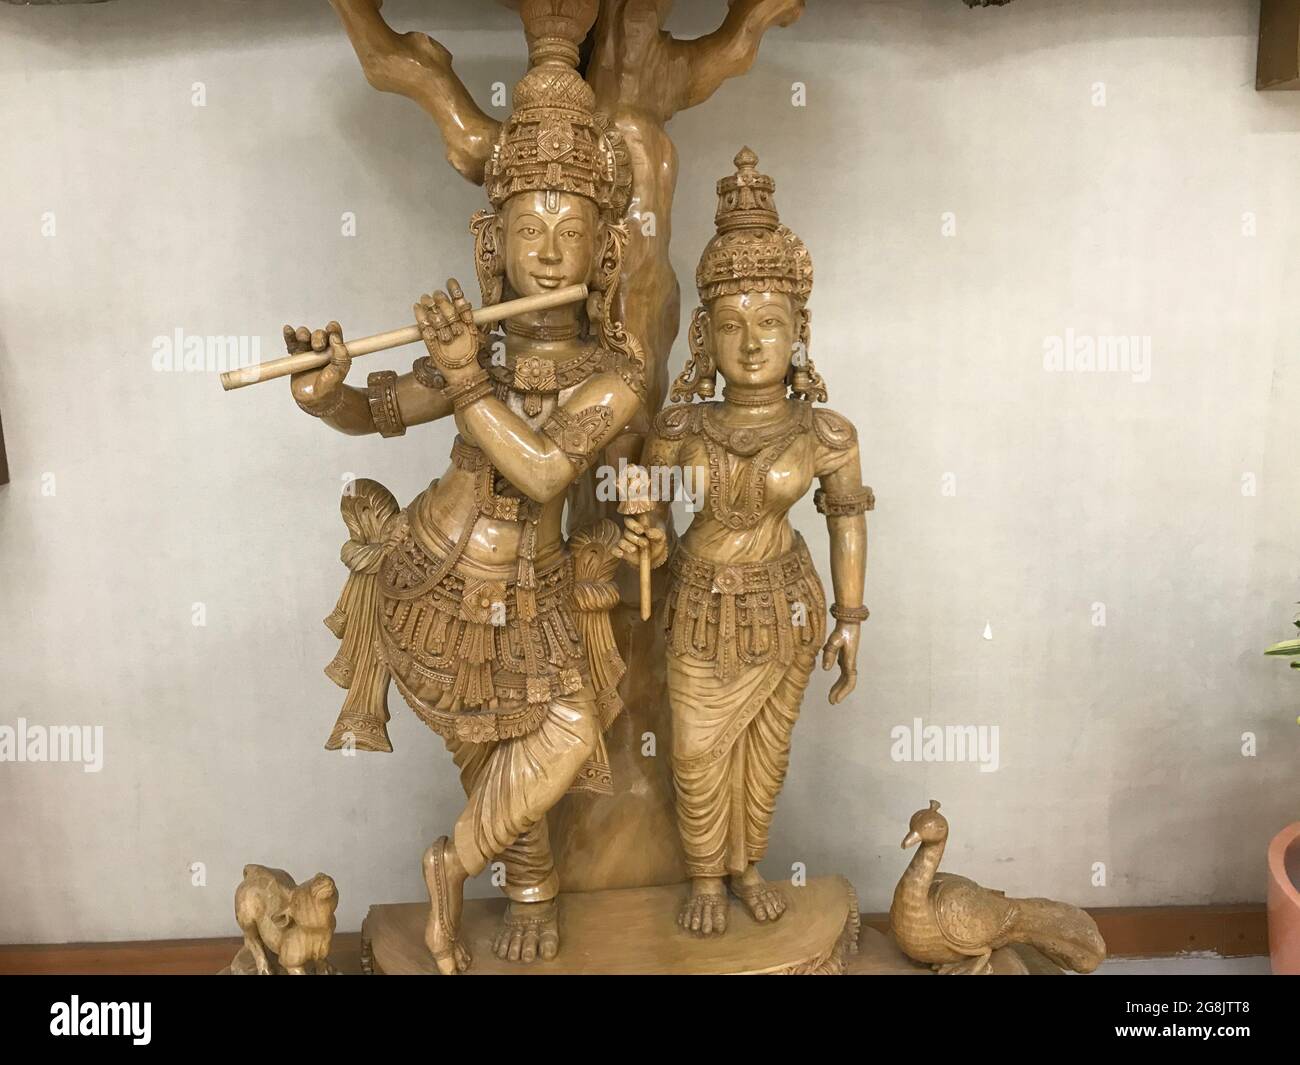 Lord Krishna et ses statues debout de déesse sont gardés dans le lieu Saint d'un Chennai et représentant l'hindouisme en Inde du Sud Banque D'Images